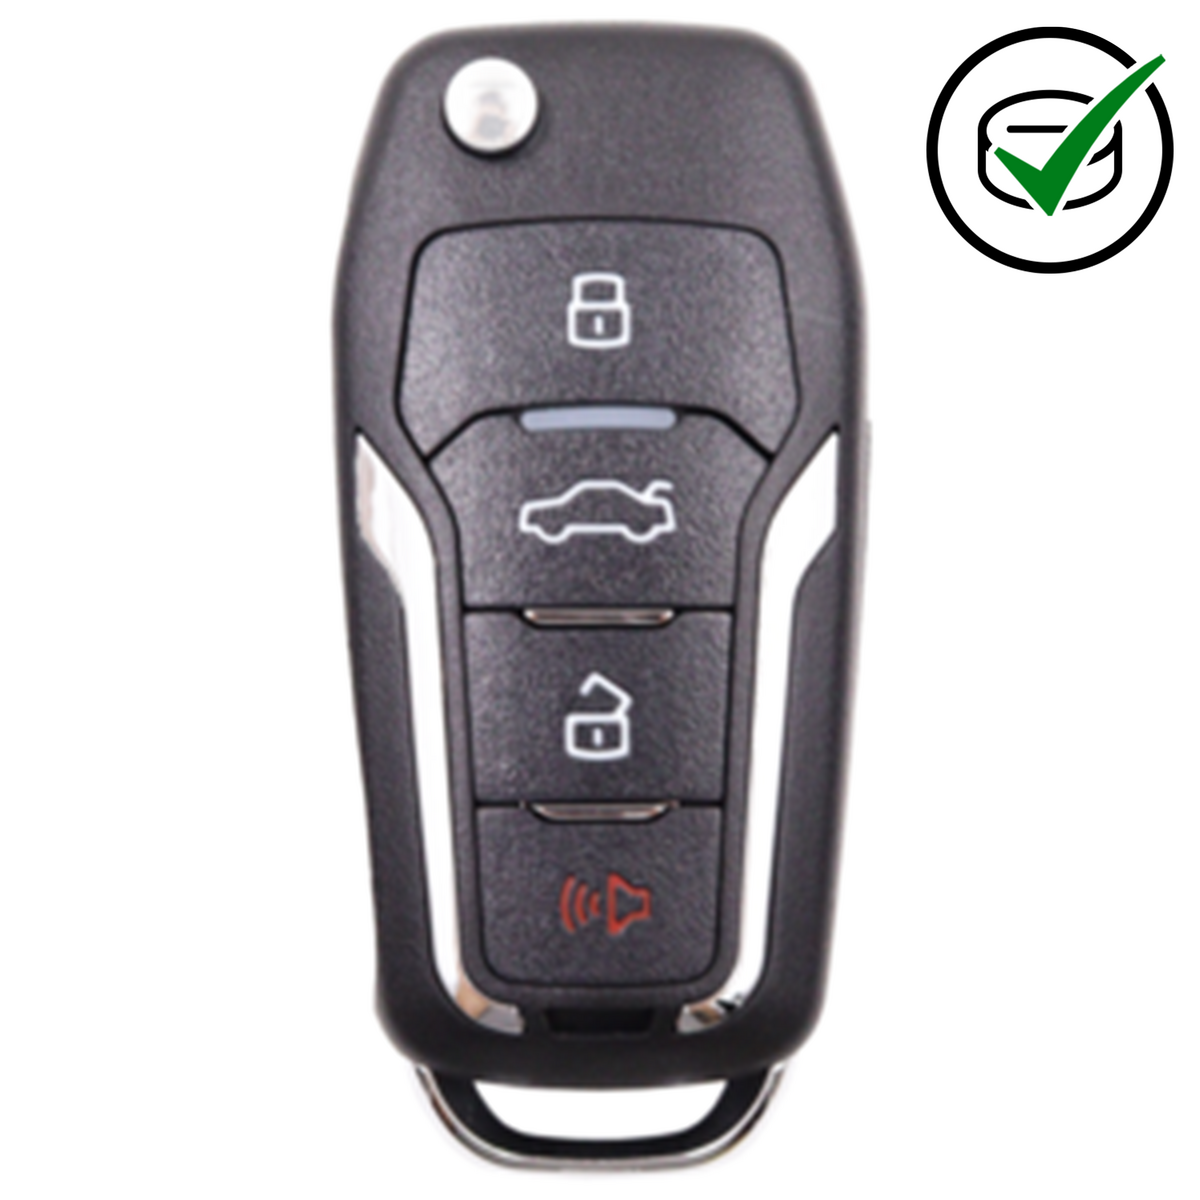 KeyDIY 4 Button Flip Key with Panic to suit NB12-4